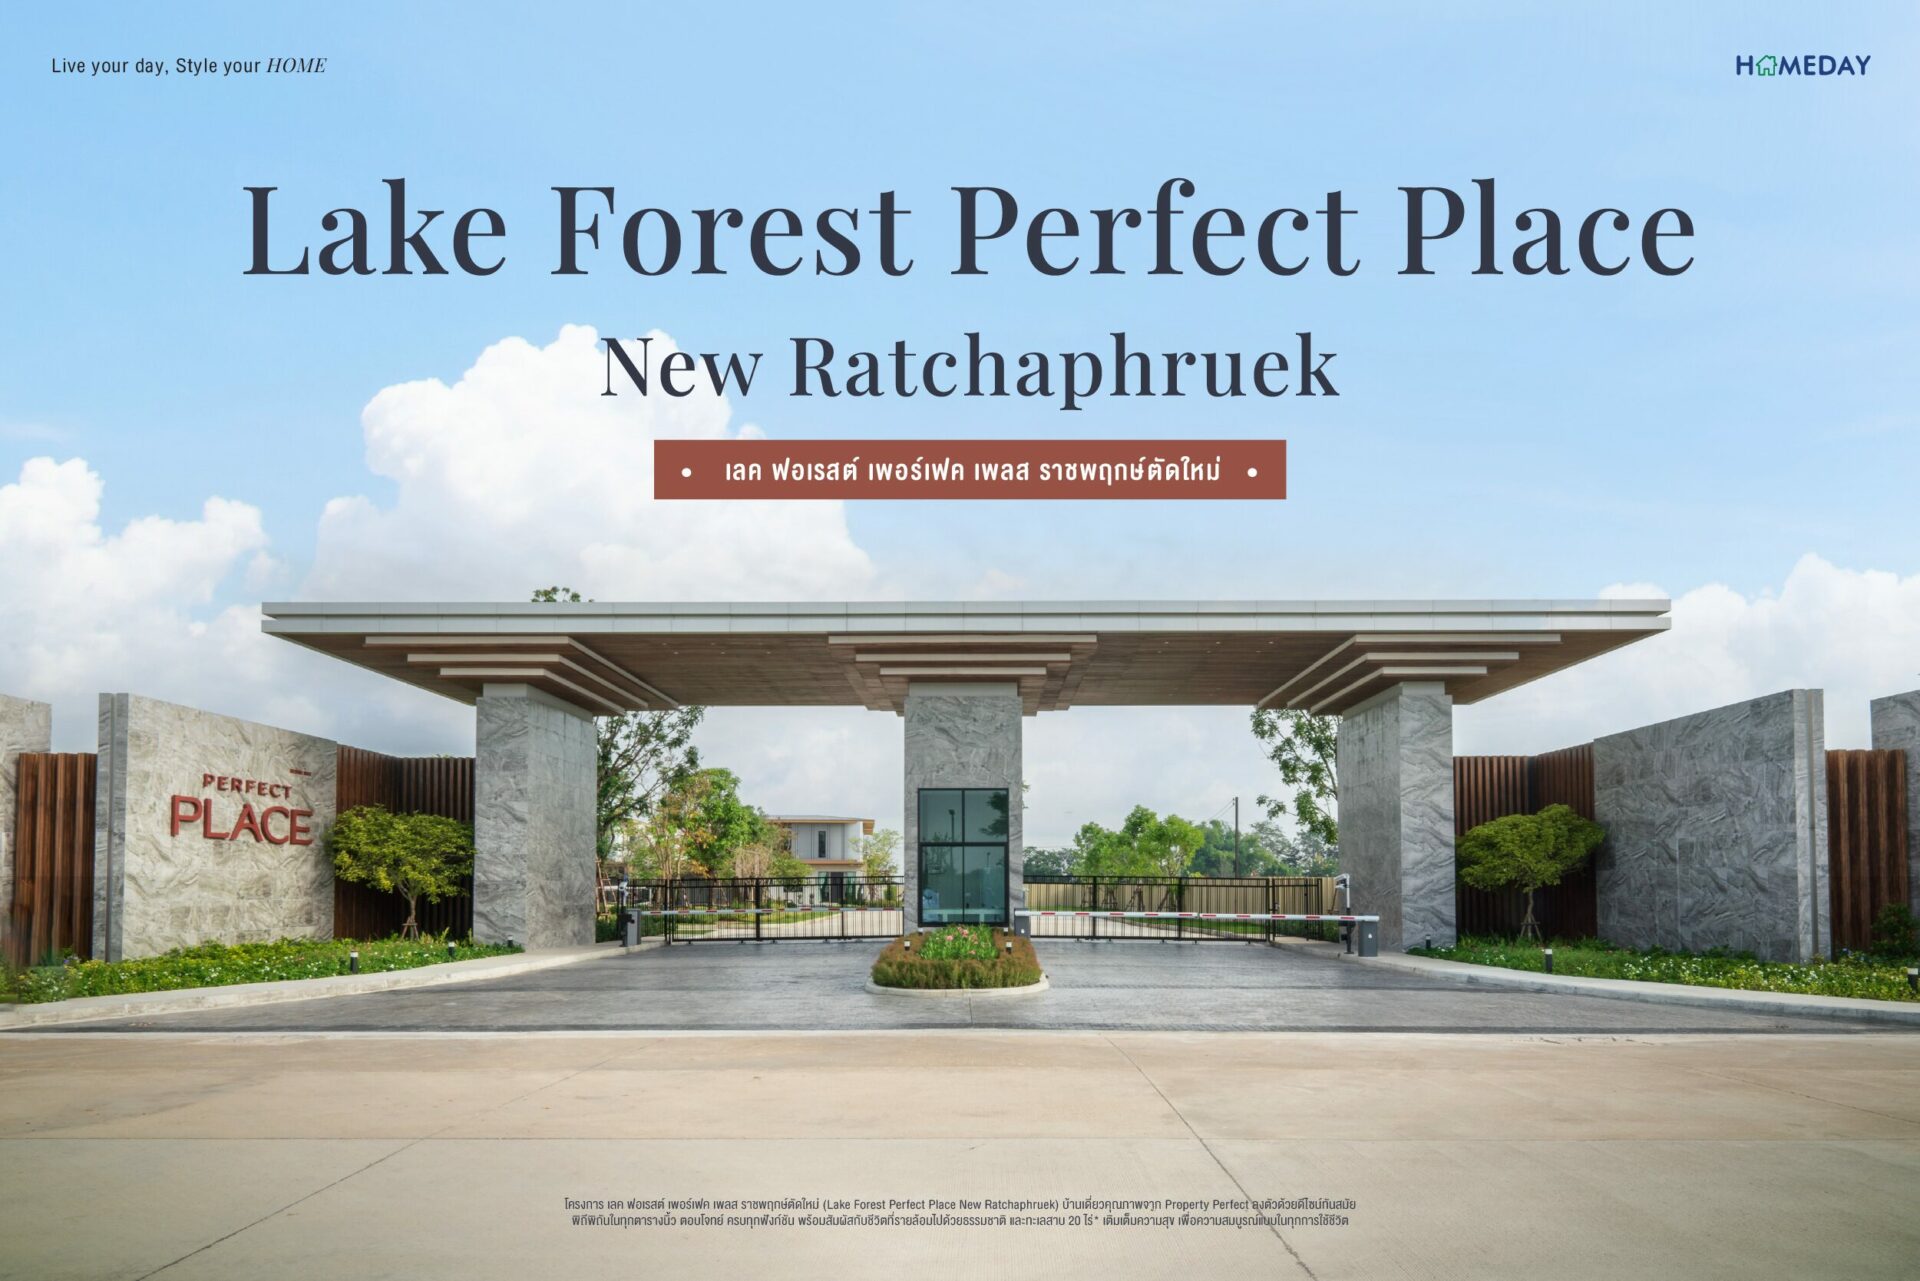 รีวิว เลค ฟอเรสต์ เพอร์เฟค เพลส ราชพฤกษ์ตัดใหม่ Lake Forest Perfect Place New Ratchaphruek C1